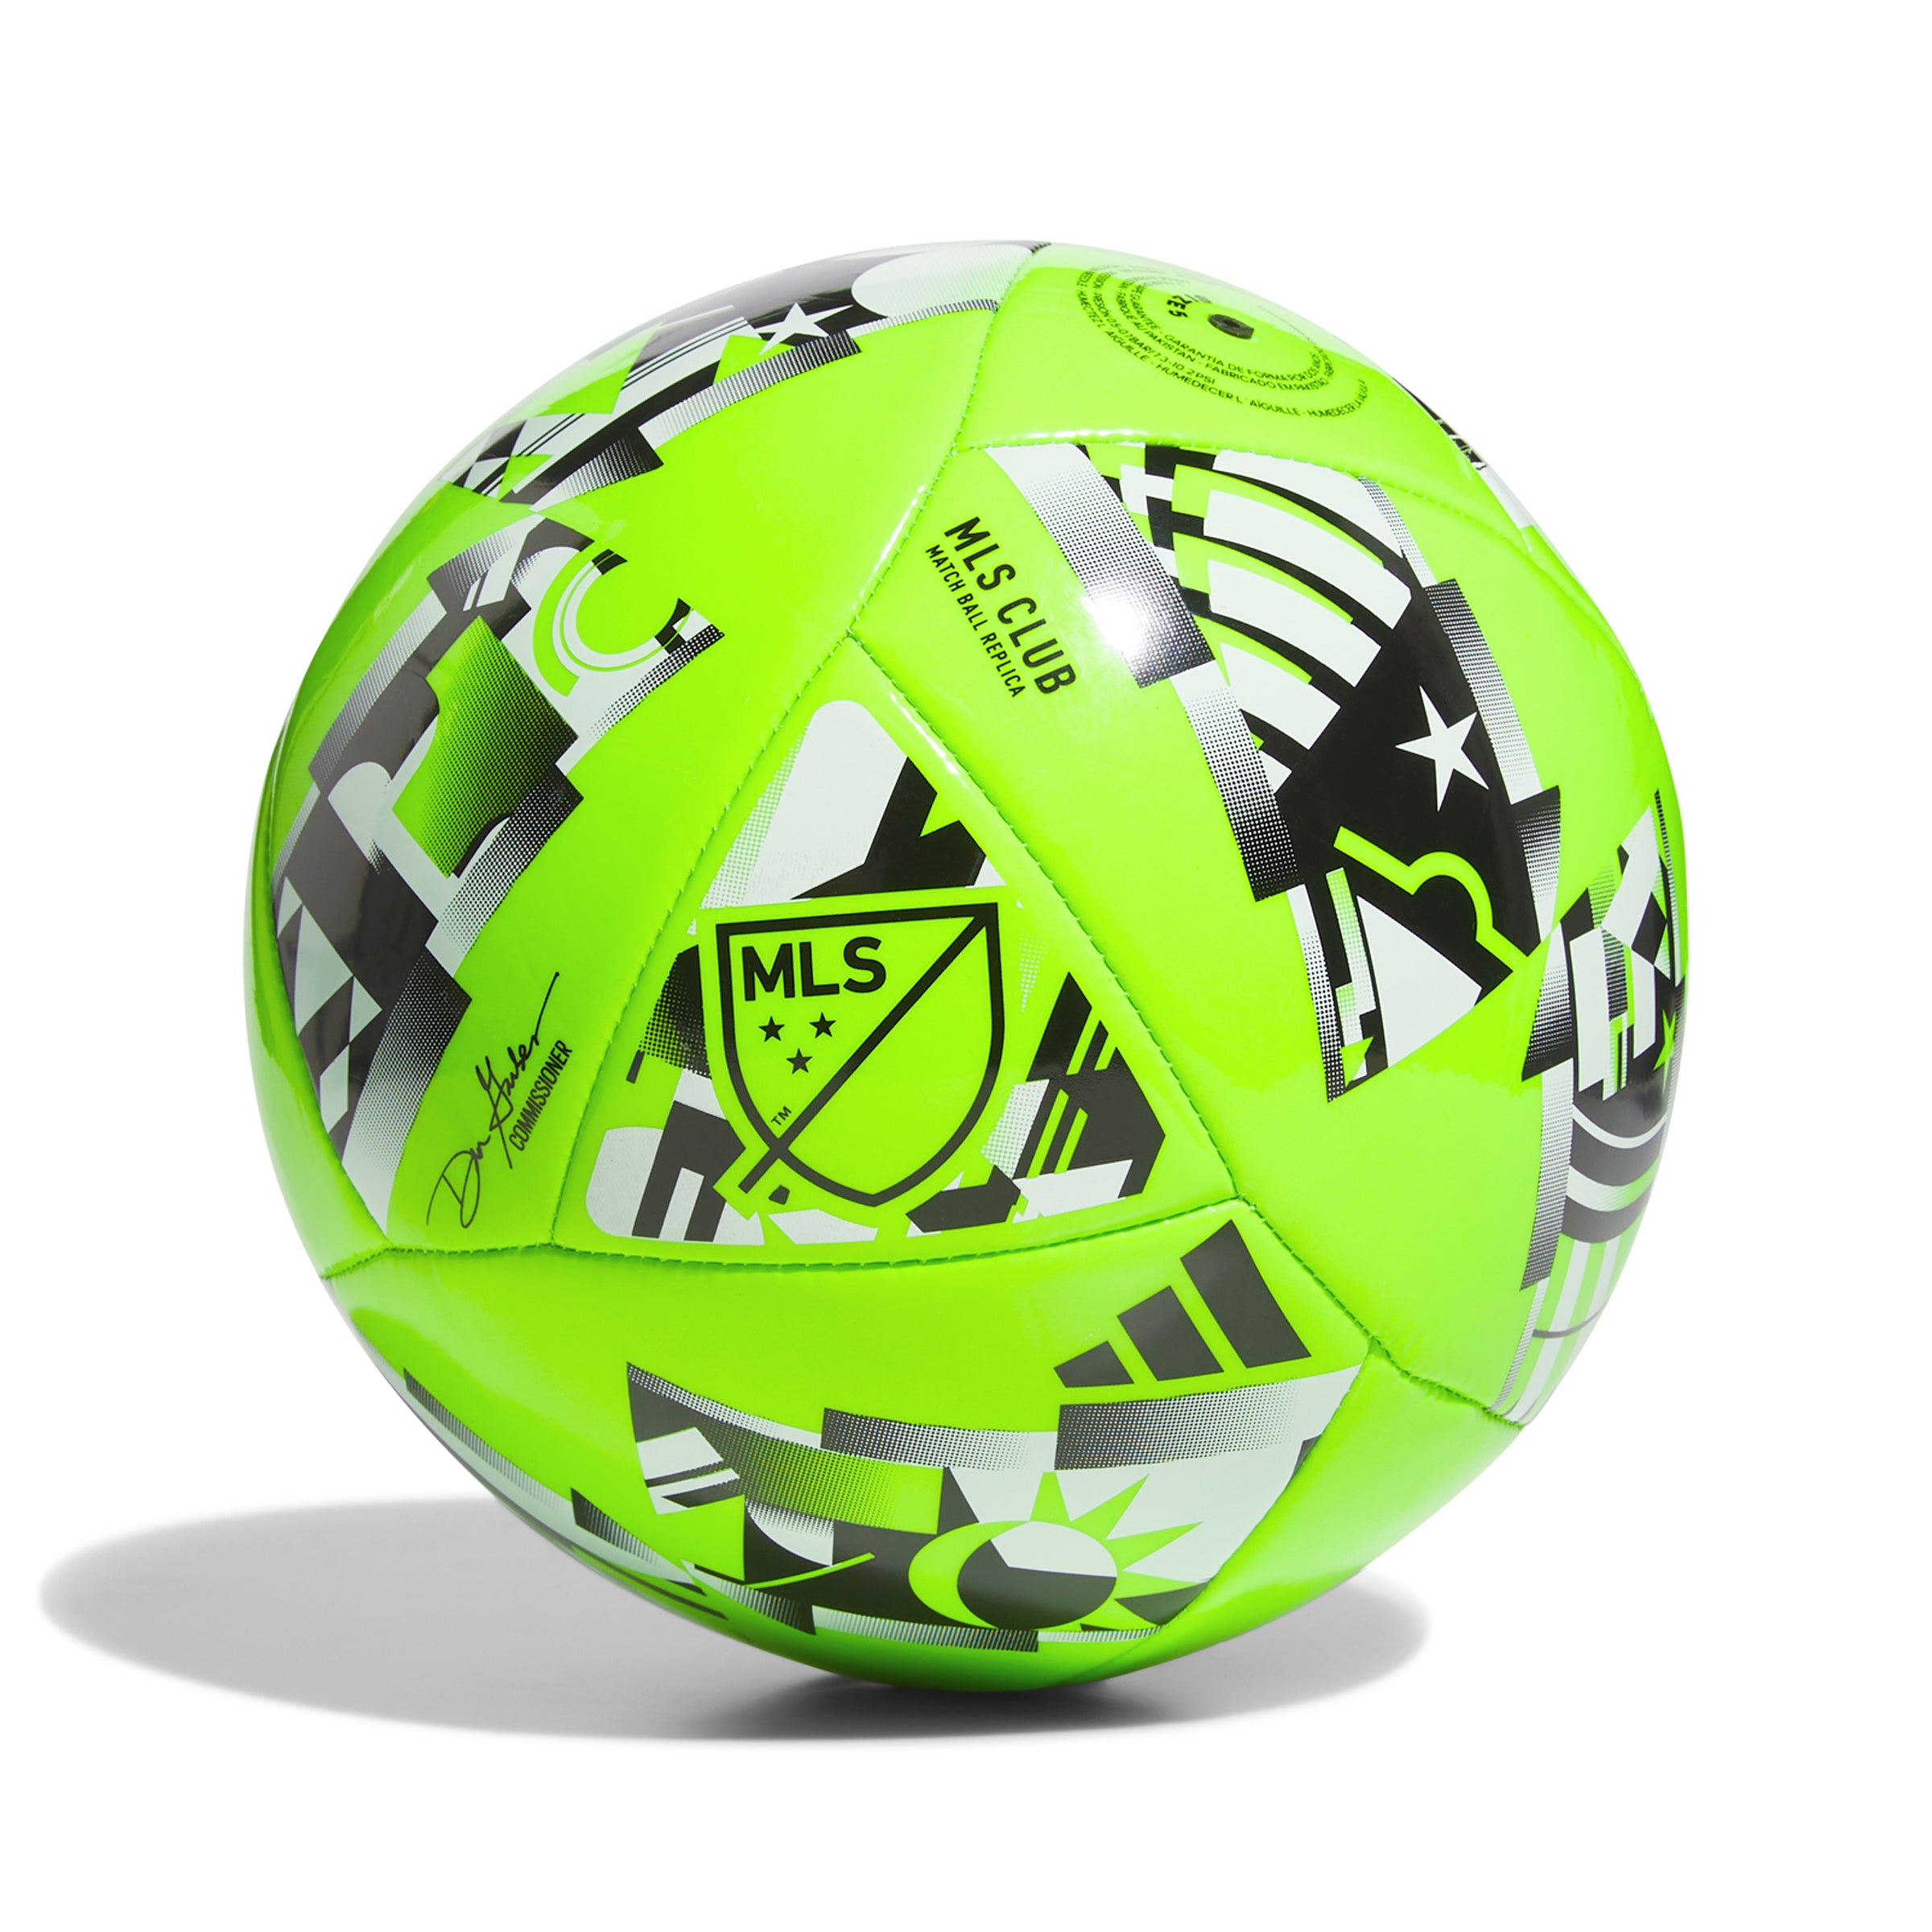 Adidas MLS Club Ball - IP1627